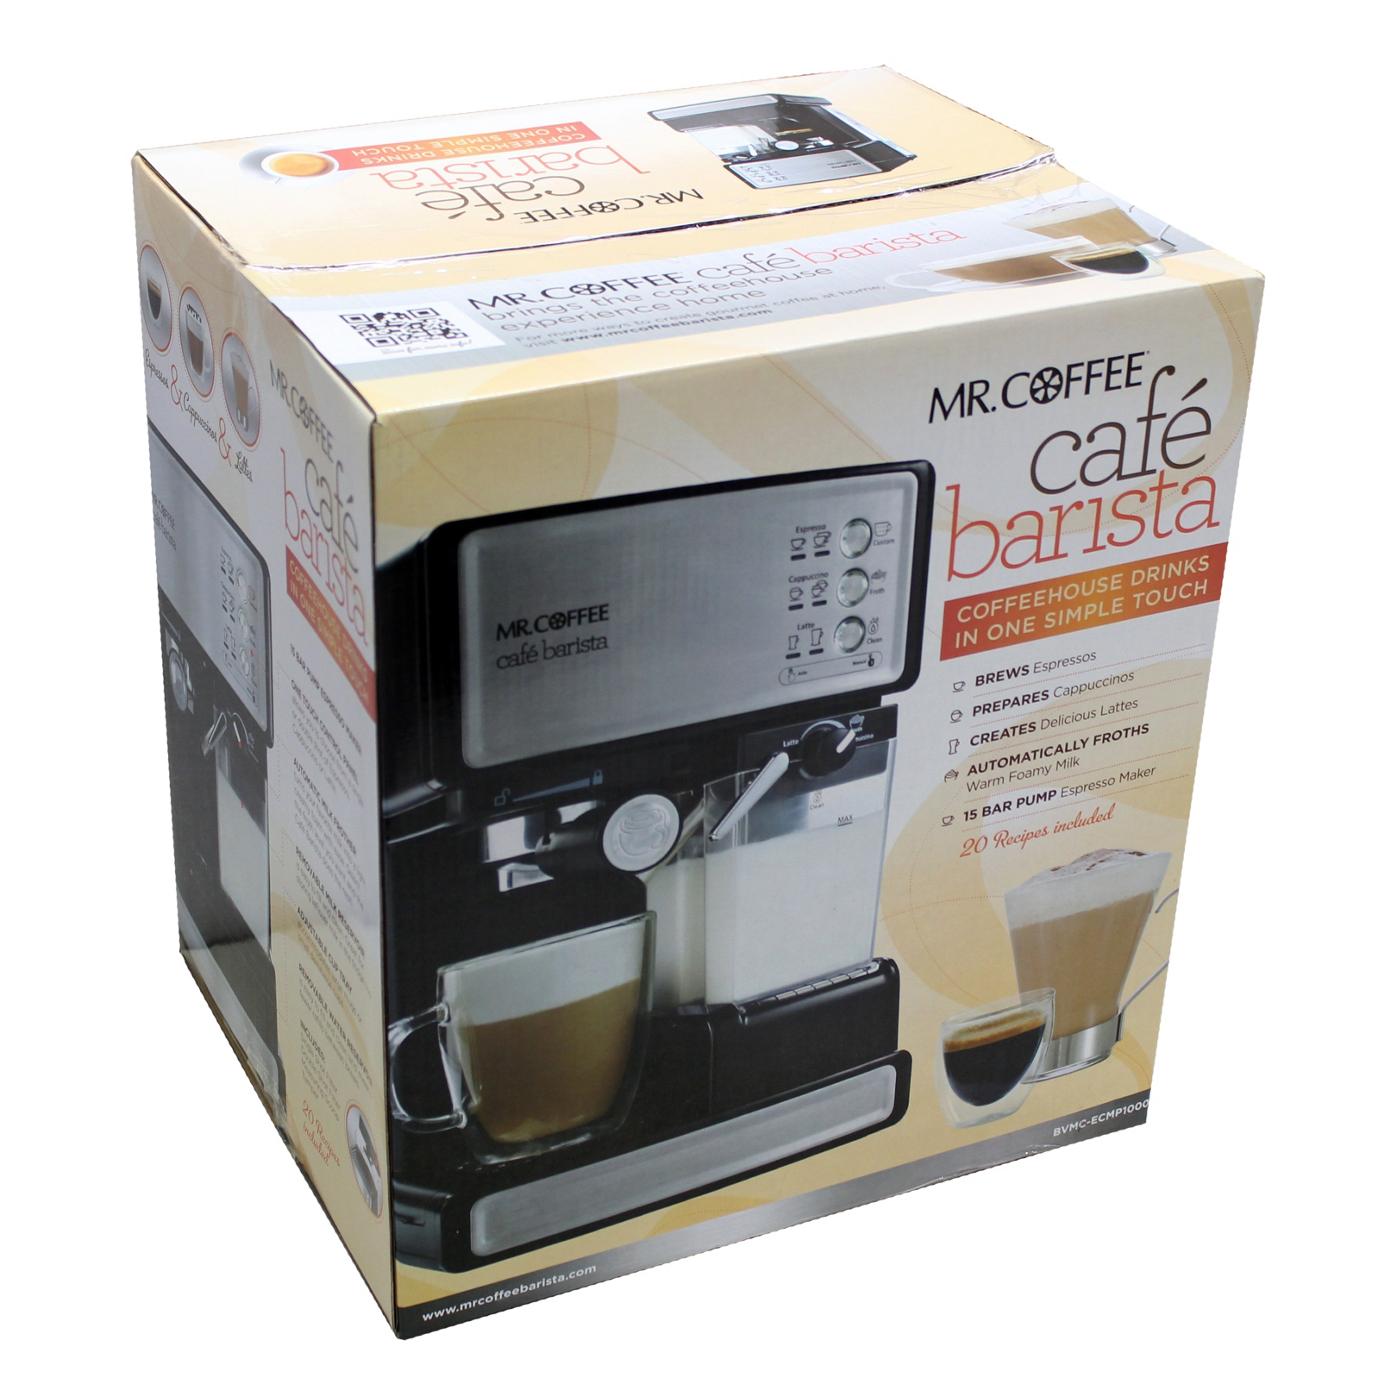  Mr. Coffee Cafe Barista Espresso Maker and BVMC-BMH23